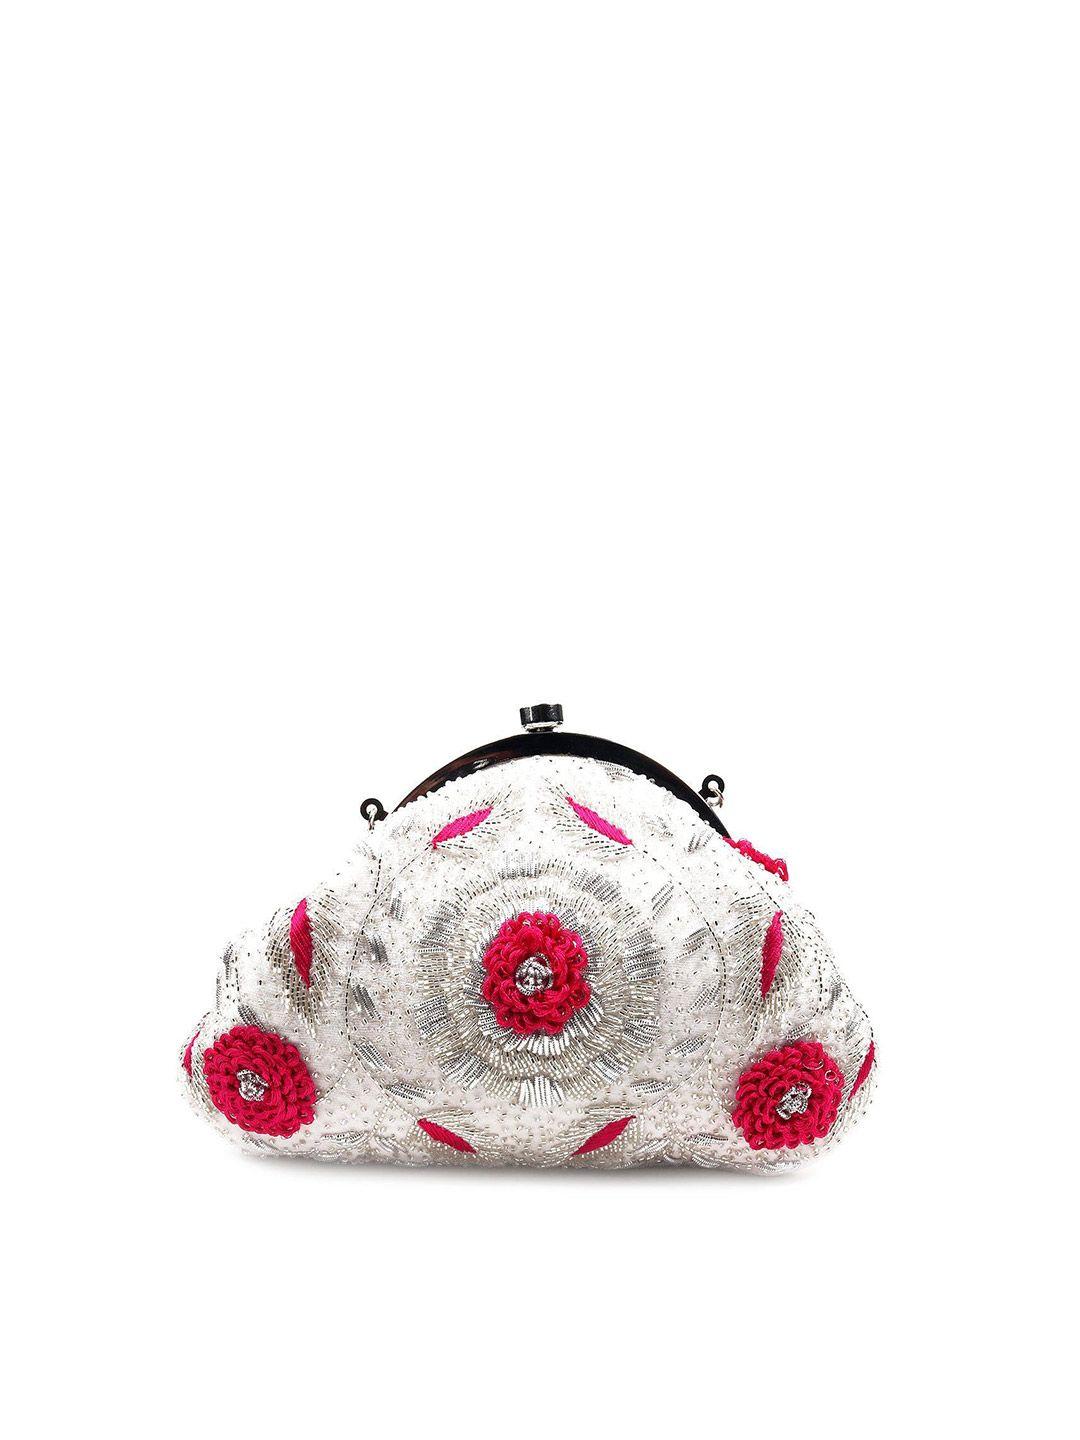 odette floral embellished purse clutch